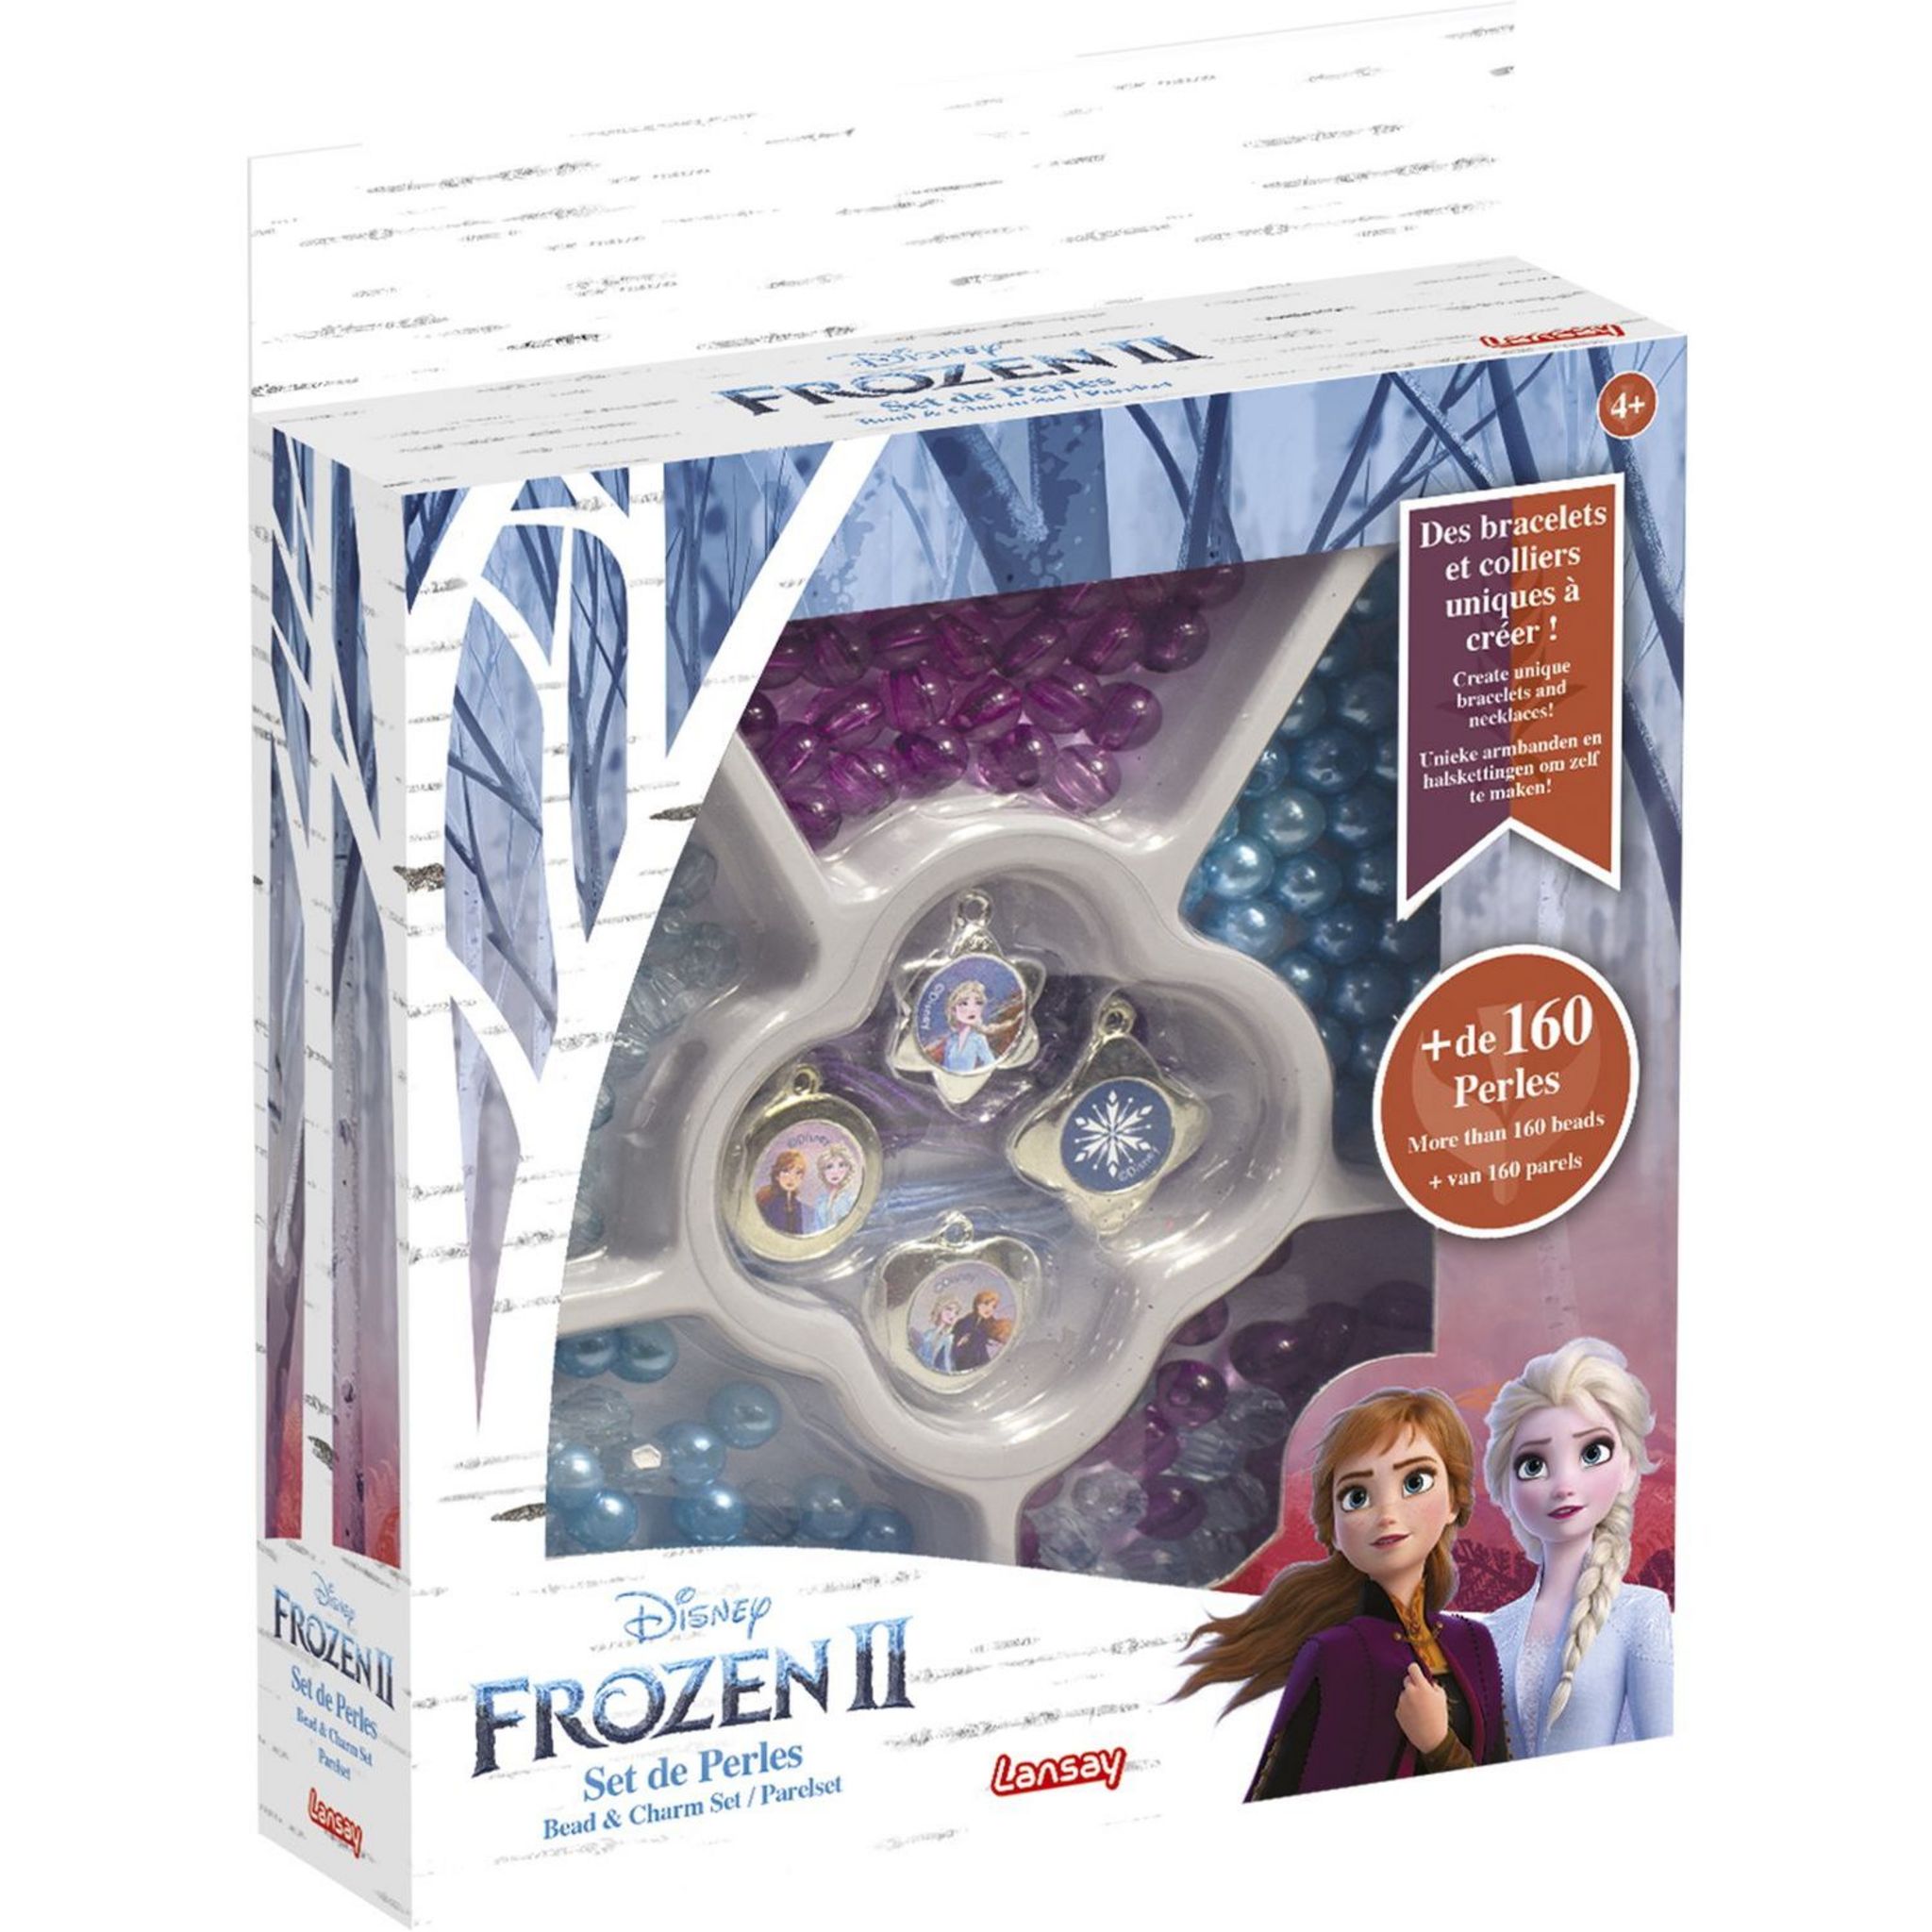 LANSAY Mon set de perles Disney Frozen II La Reine des Neiges 2 pas cher 